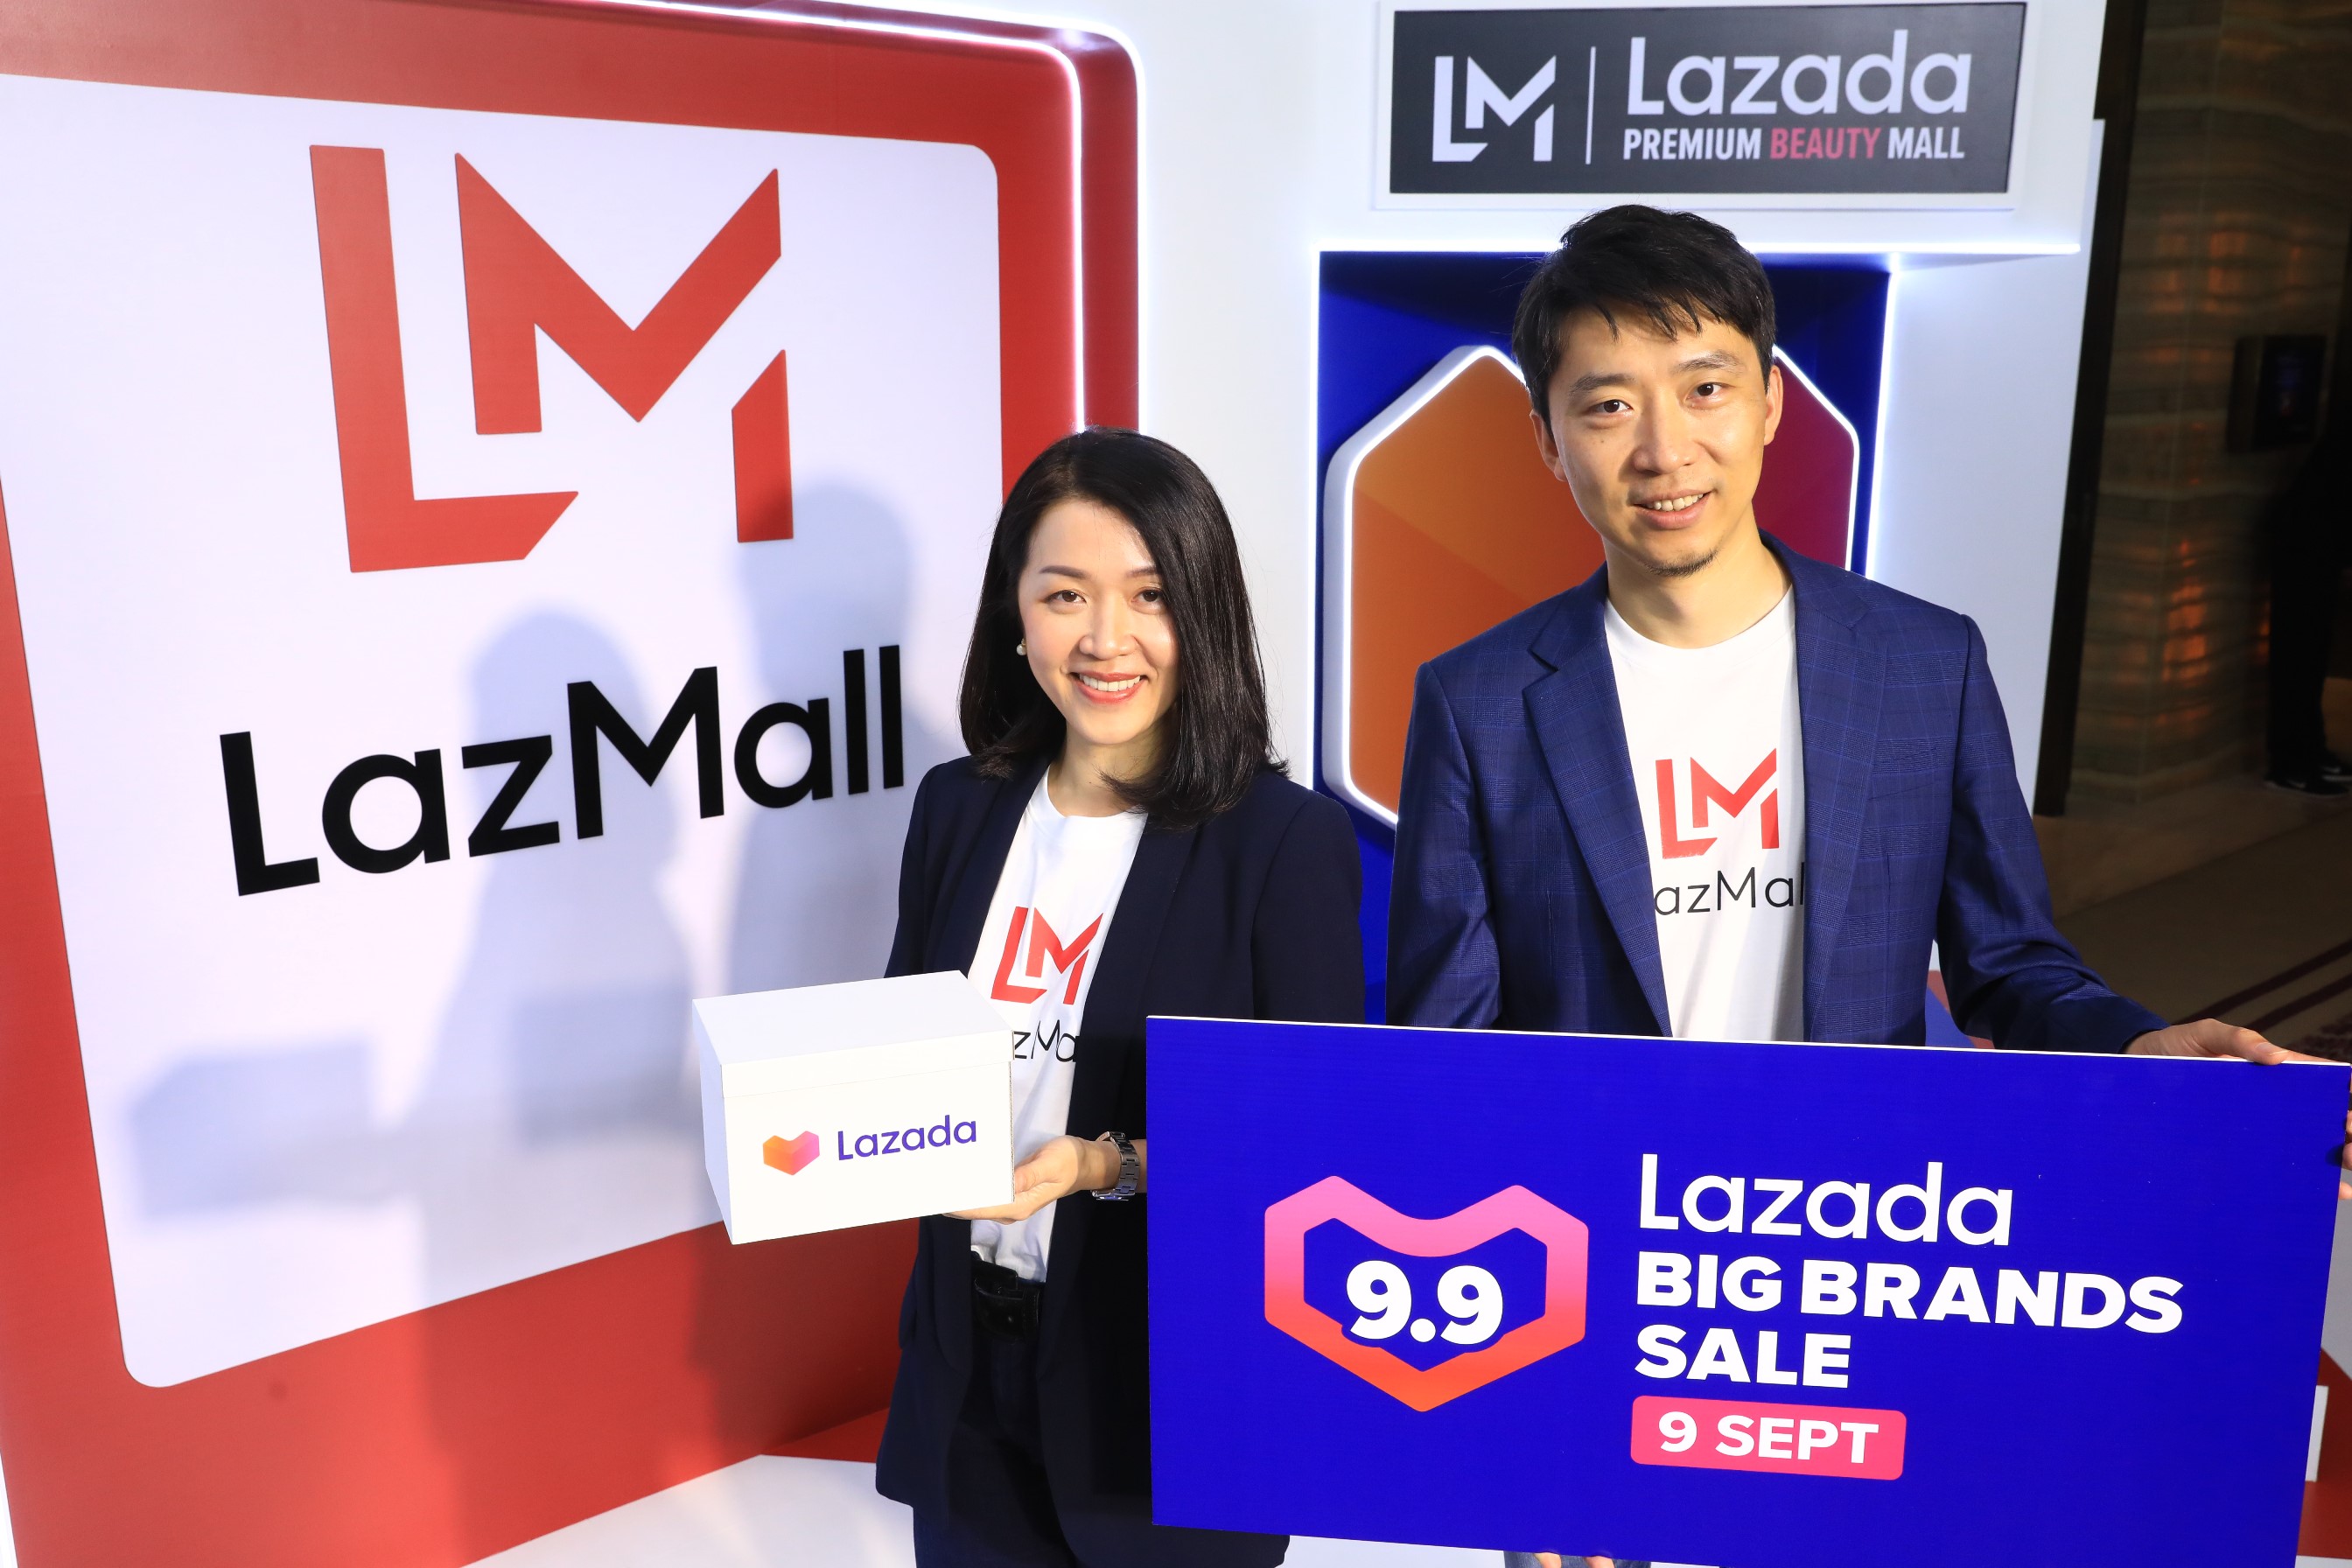 ลาซาด้า พลิกโฉม LazMall ห้างสรรพสินค้าเสมือนจริงที่ใหญ่ที่สุด ในเอเชียตะวันออกเฉียงใต้ พร้อมเปิดตัวร้าน Lazada On Ground แห่งแรกของไทย